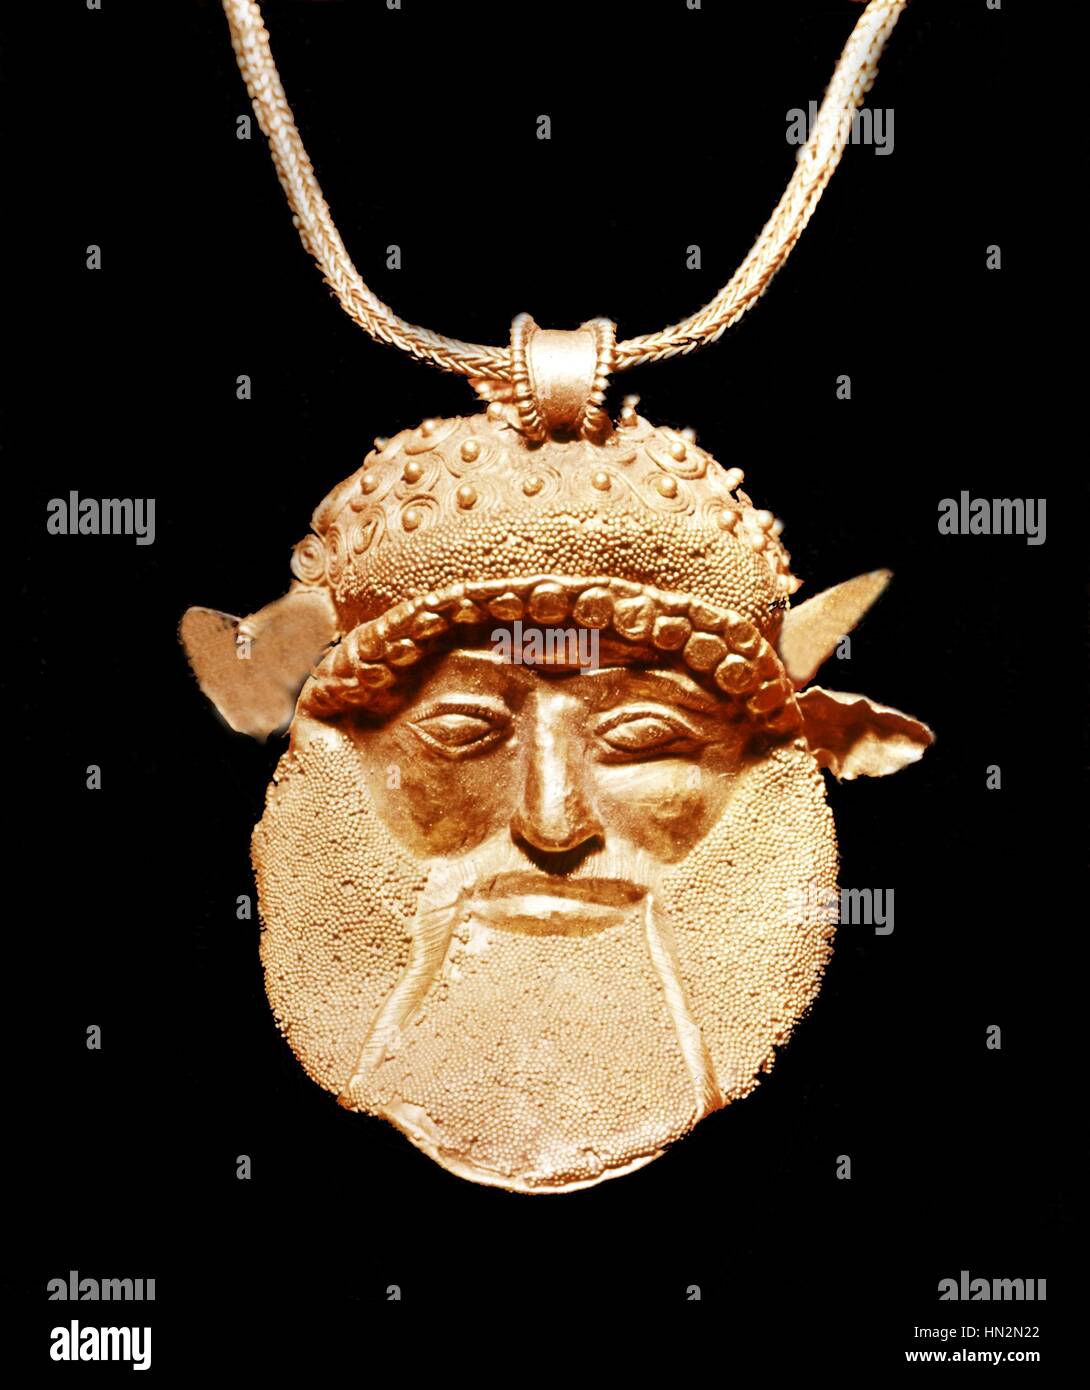 Golden Etruscan pendant representing Achelous, Greek River God 5th century BC Etruscan art Paris, musee du Louvre Stock Photo